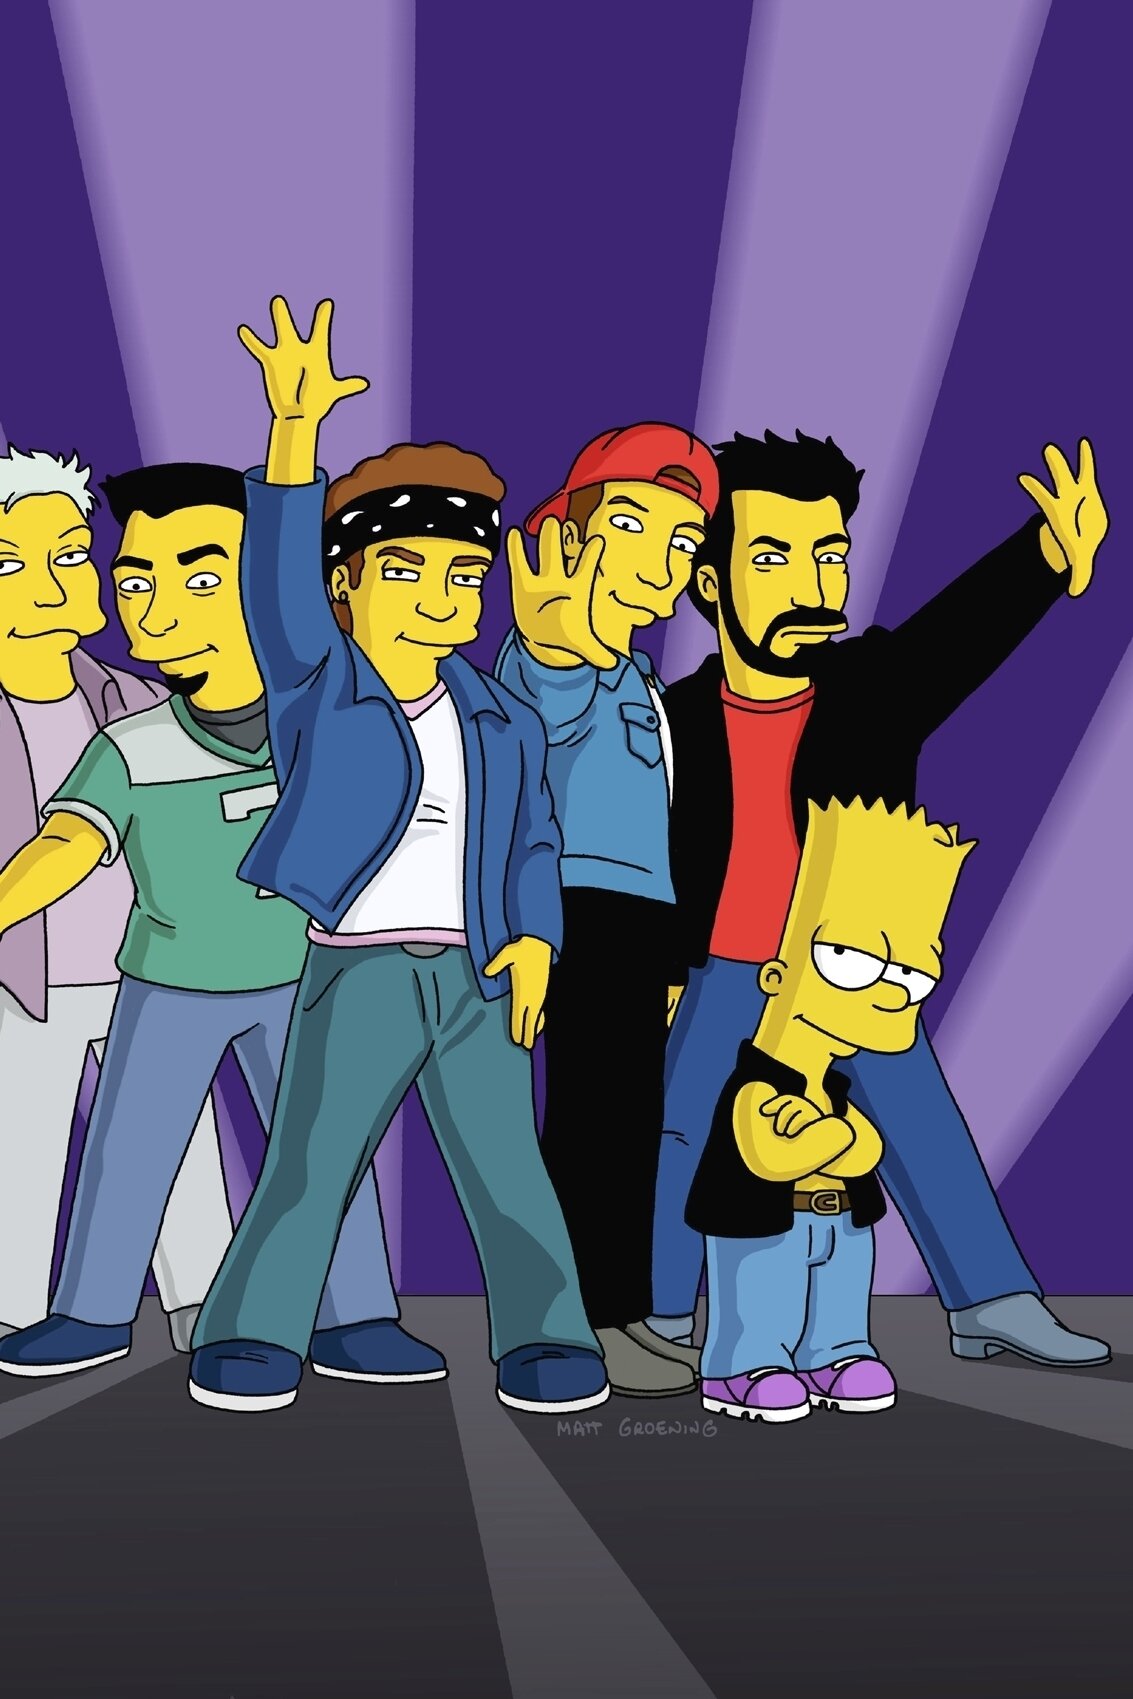 Les Simpson - Bart et son boys band